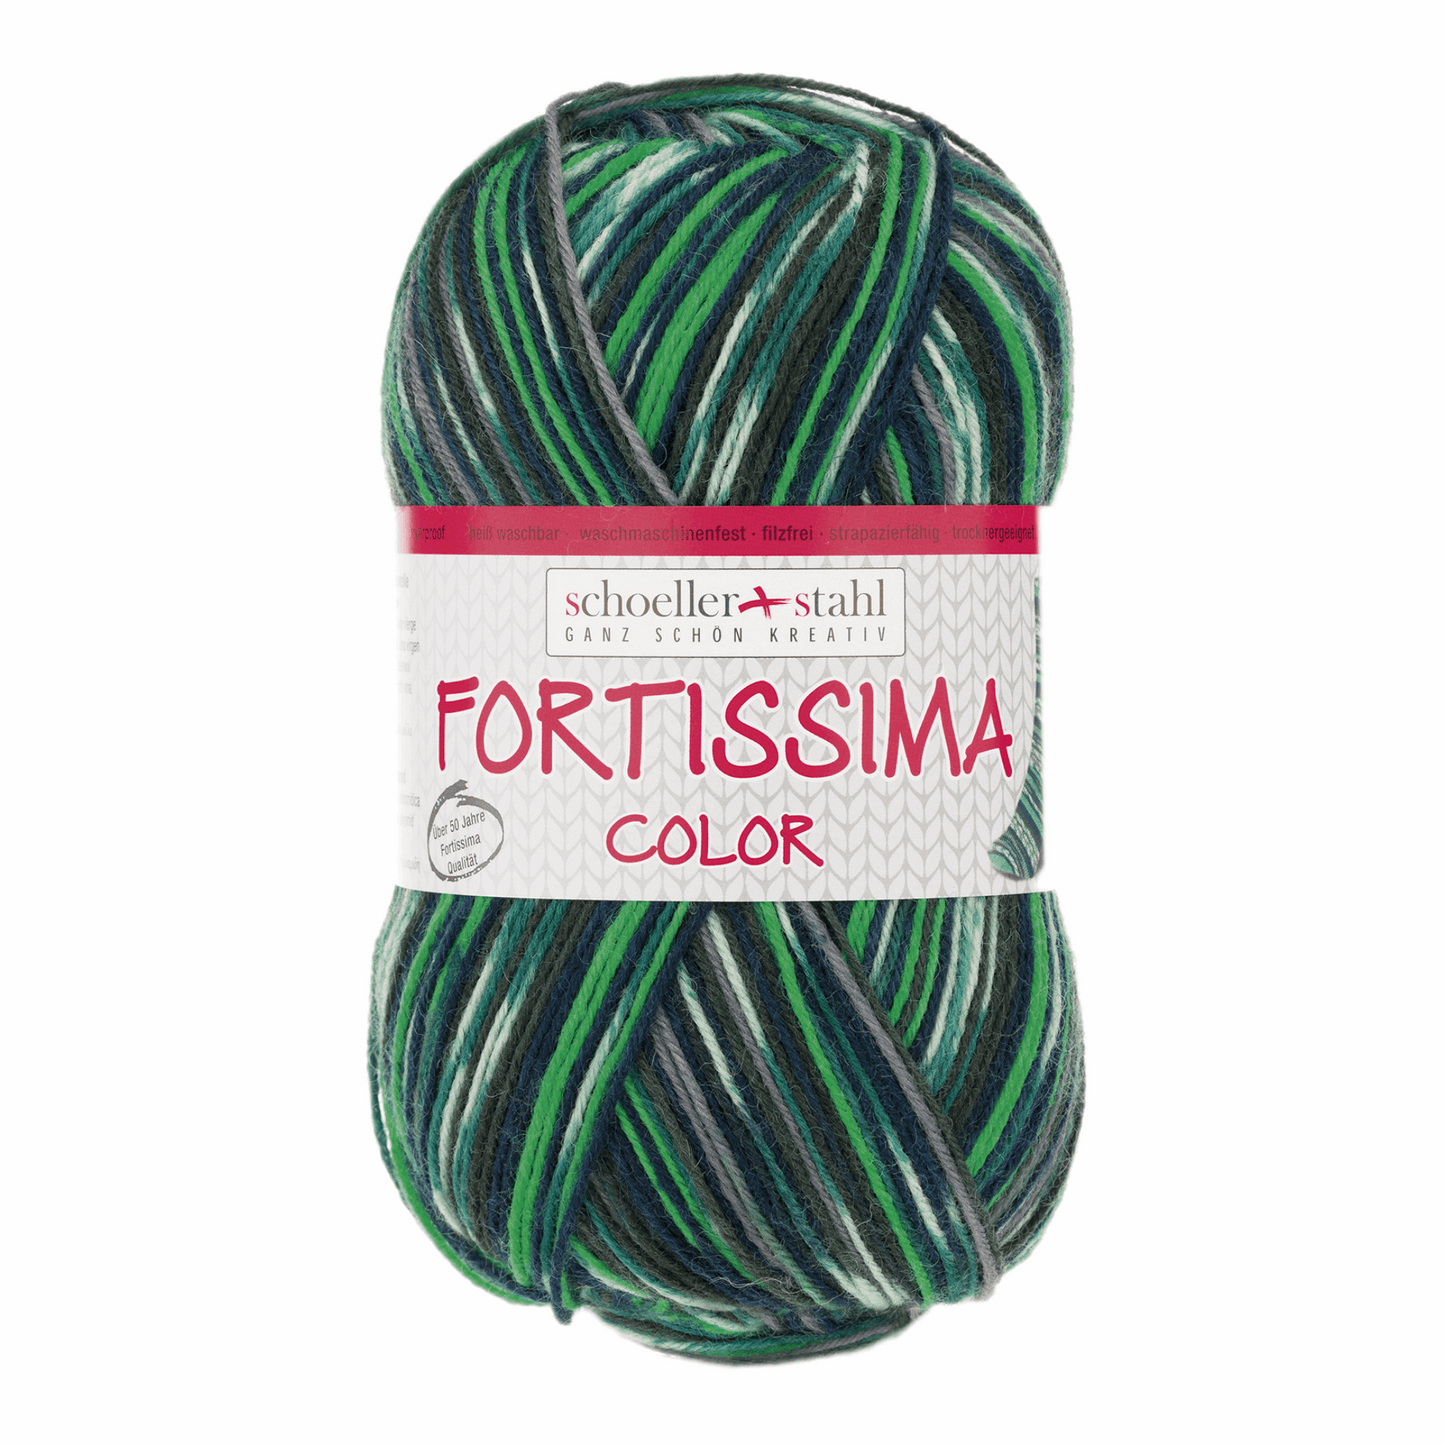 Fortissima socka 4fädig, 90028, Farbe 2495, gras